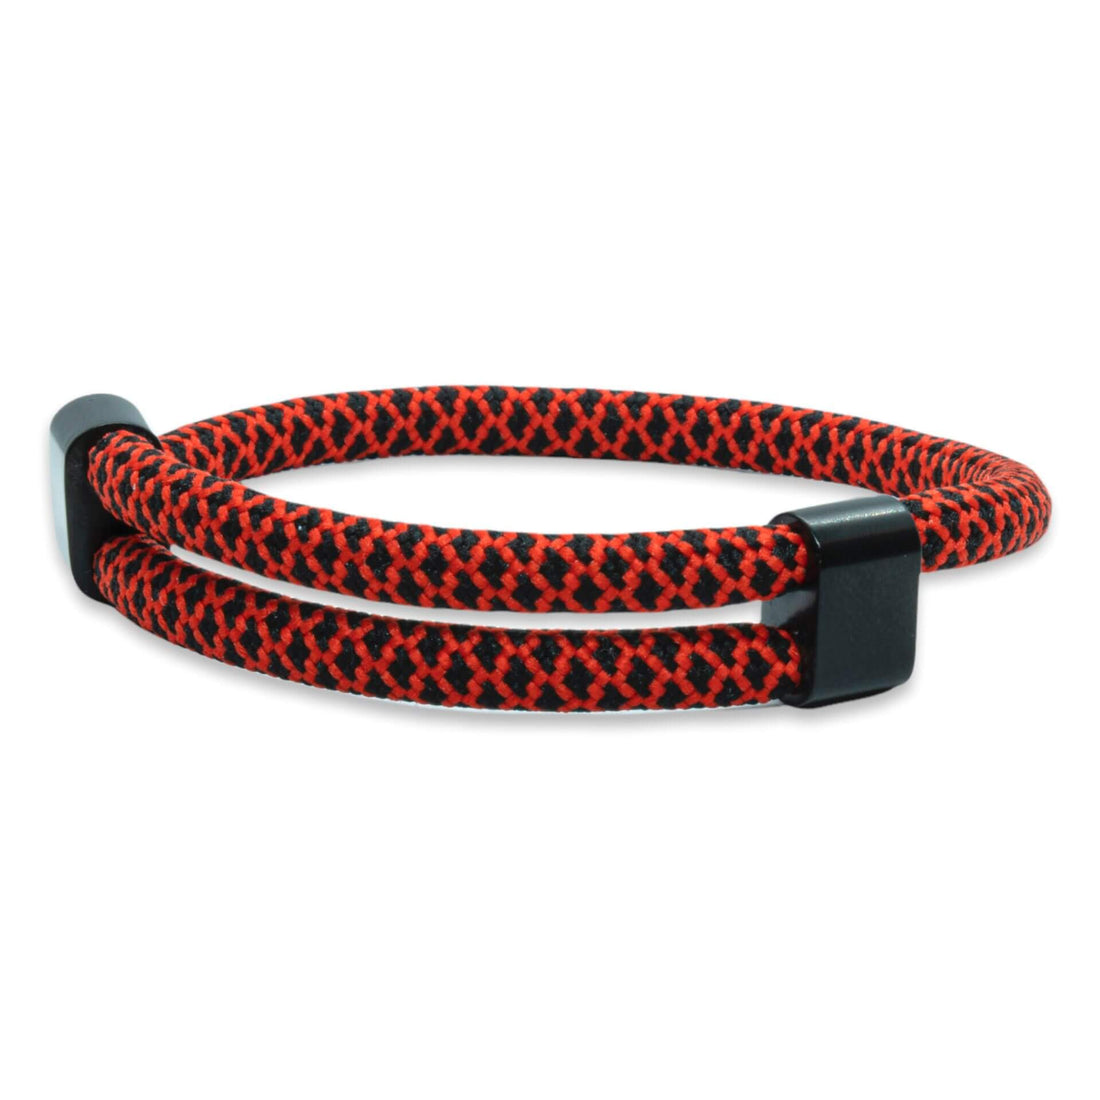 Verstelbaar touw – Rood